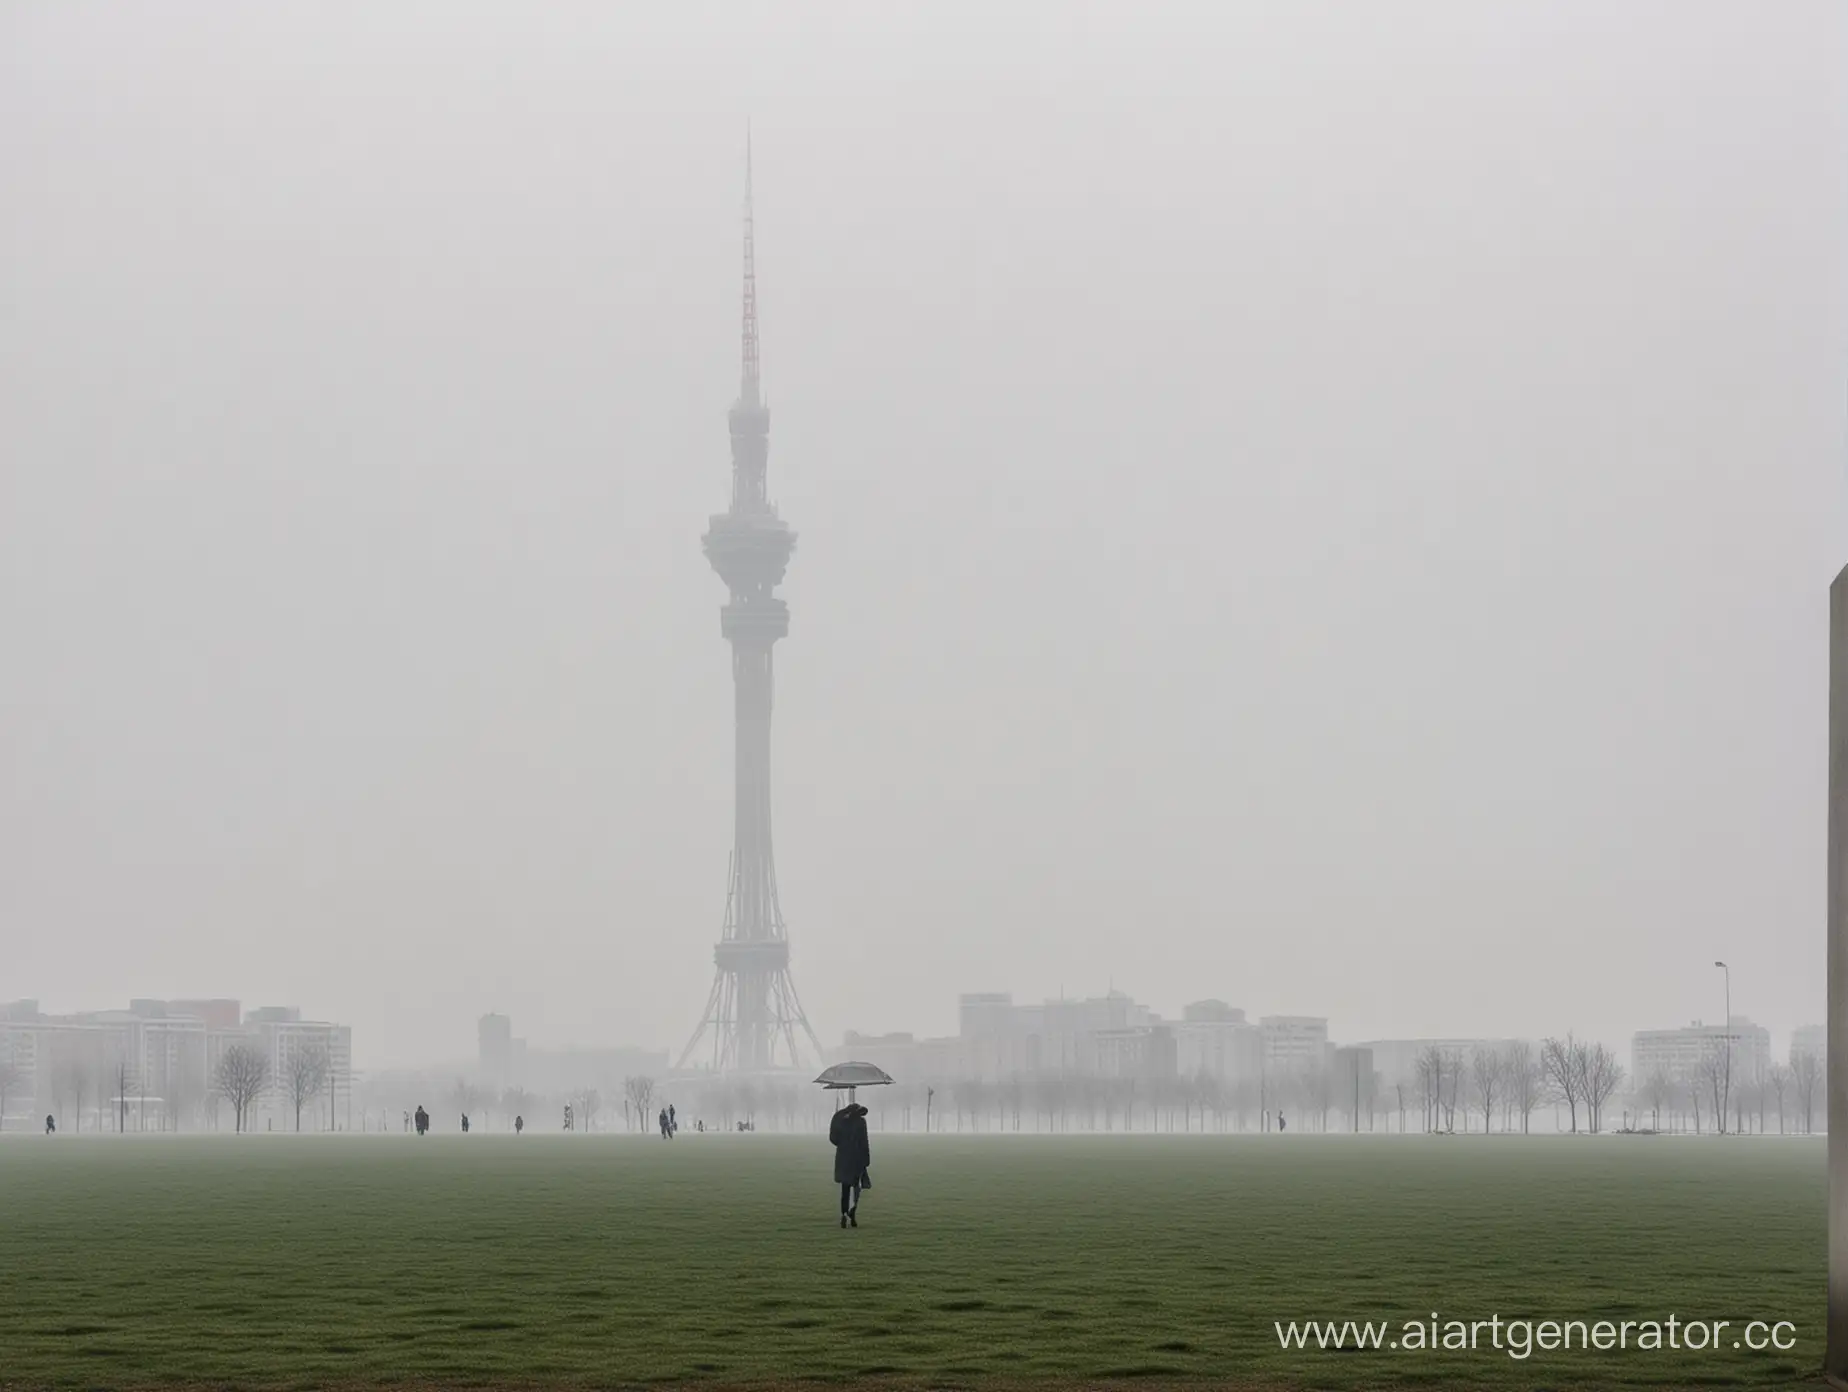 чистое поле, пасмурная погода, полдень, много тумана. Из тумана виднеется основание очень высокой башни похожей на останкинскую. На переднем плане видна девушка в полный рост идущая по направлению к башне